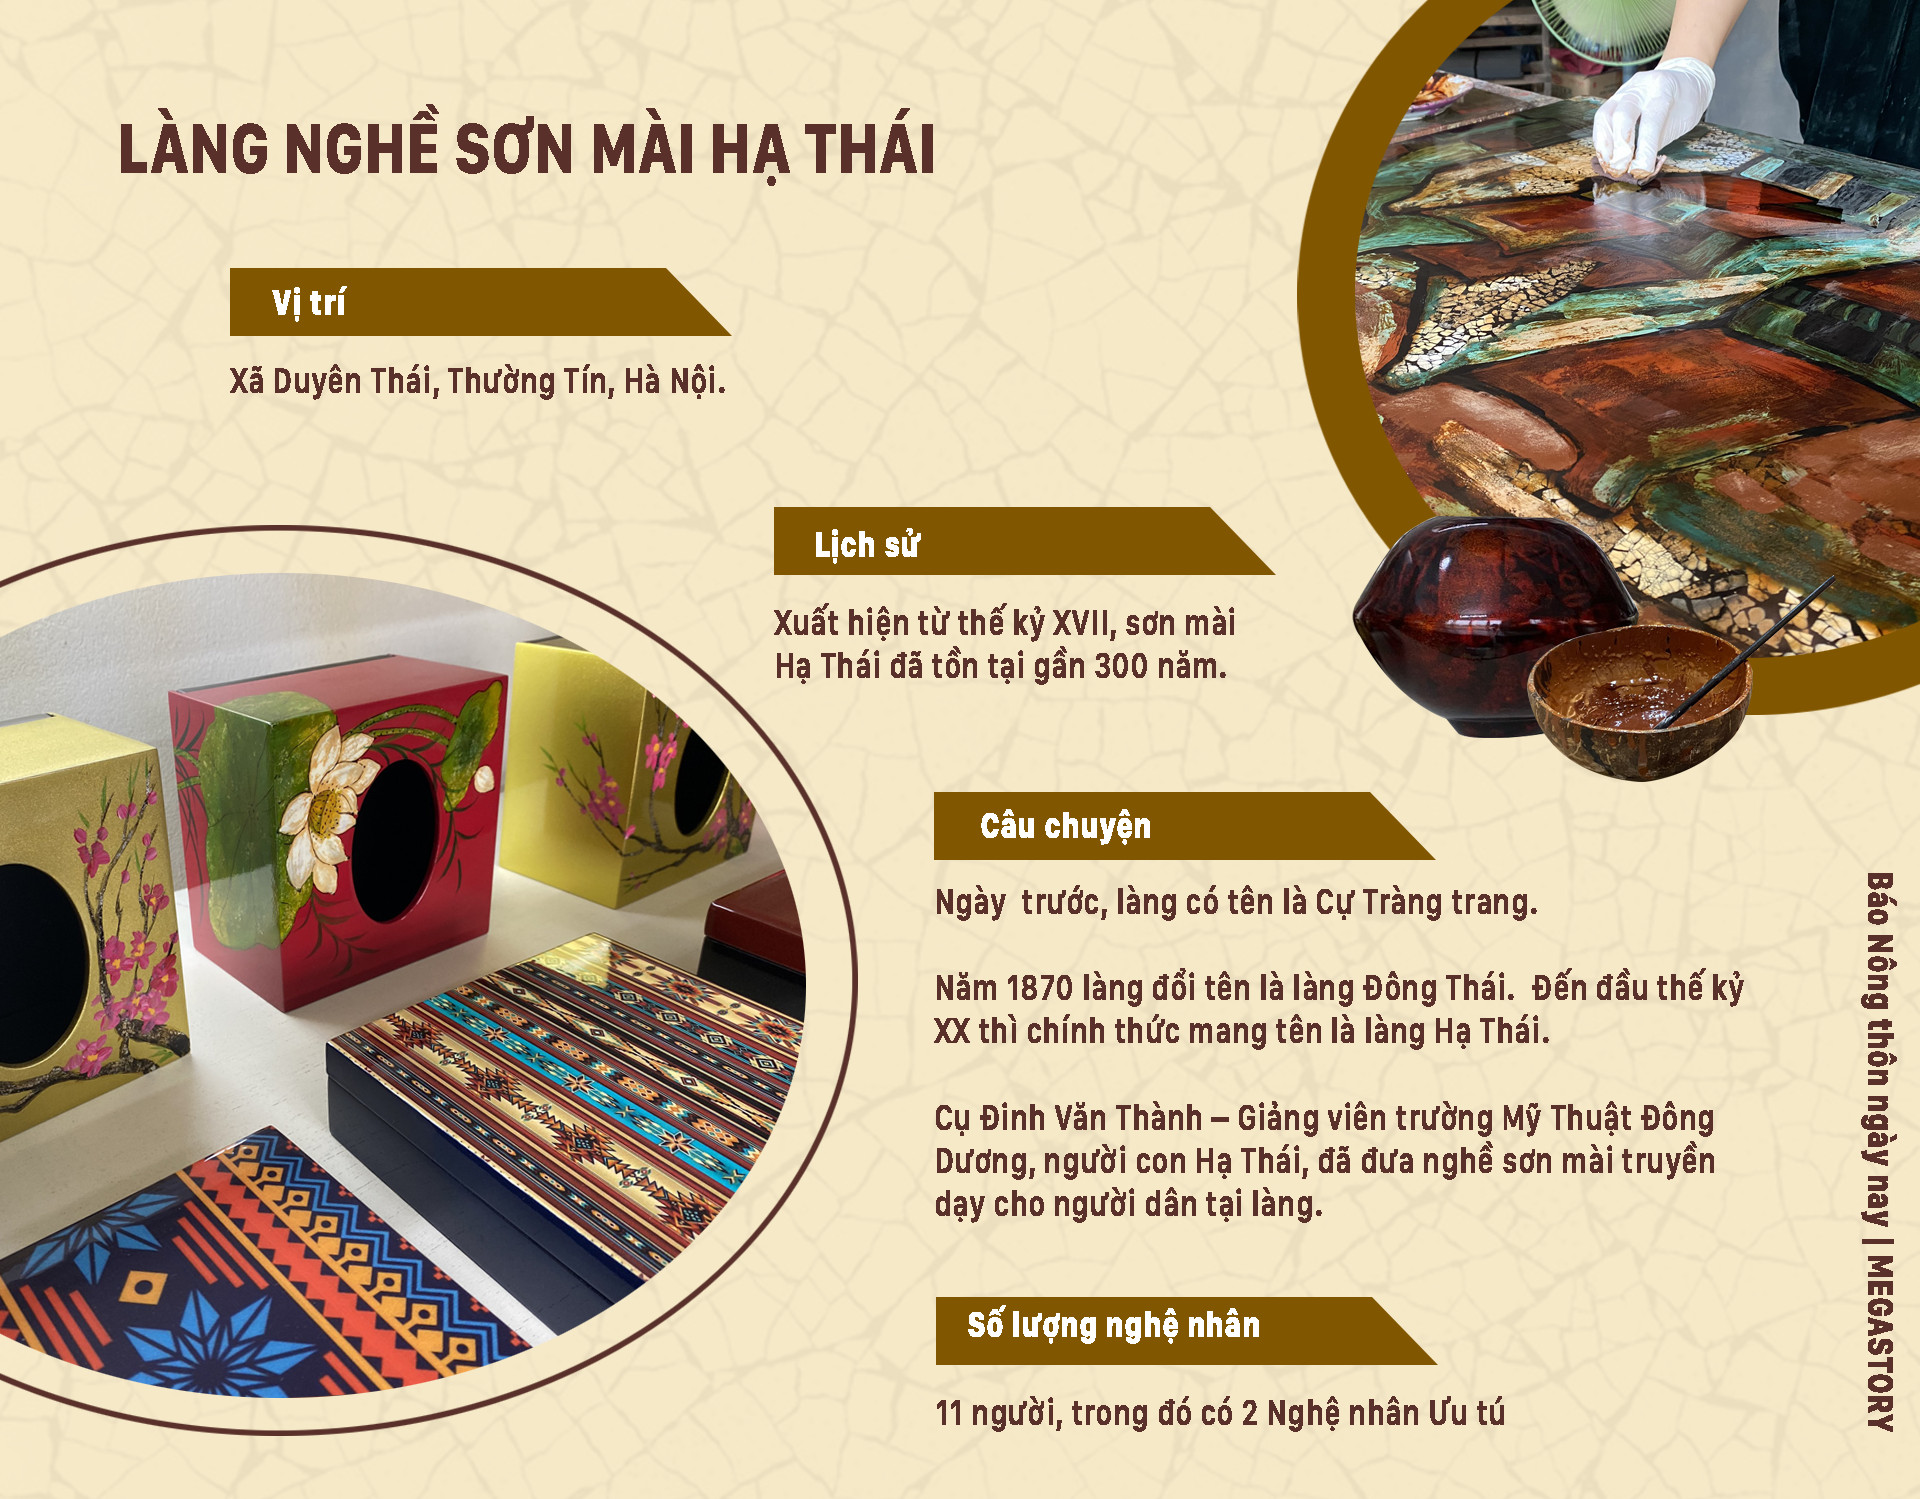 Hướng đi mới của làng nghề sơn mài truyền thống Hạ Thái - Ảnh 3.